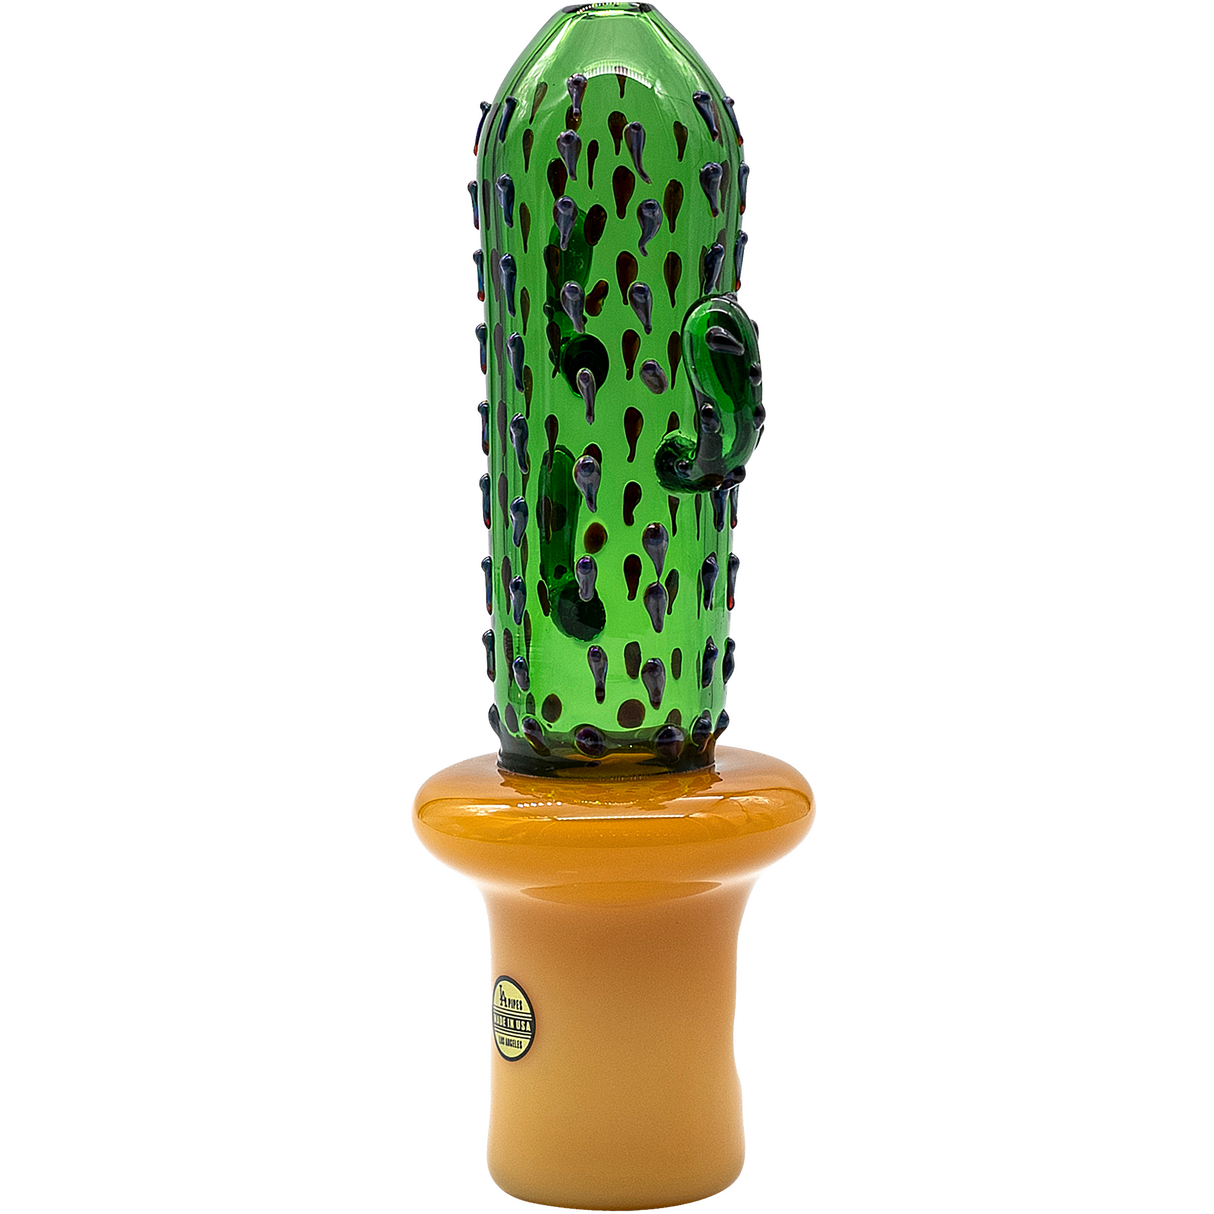 LA Pipes Glass Saguaro Cactus Pipe in Green, 5" Borosilicate Spoon Design, Front View